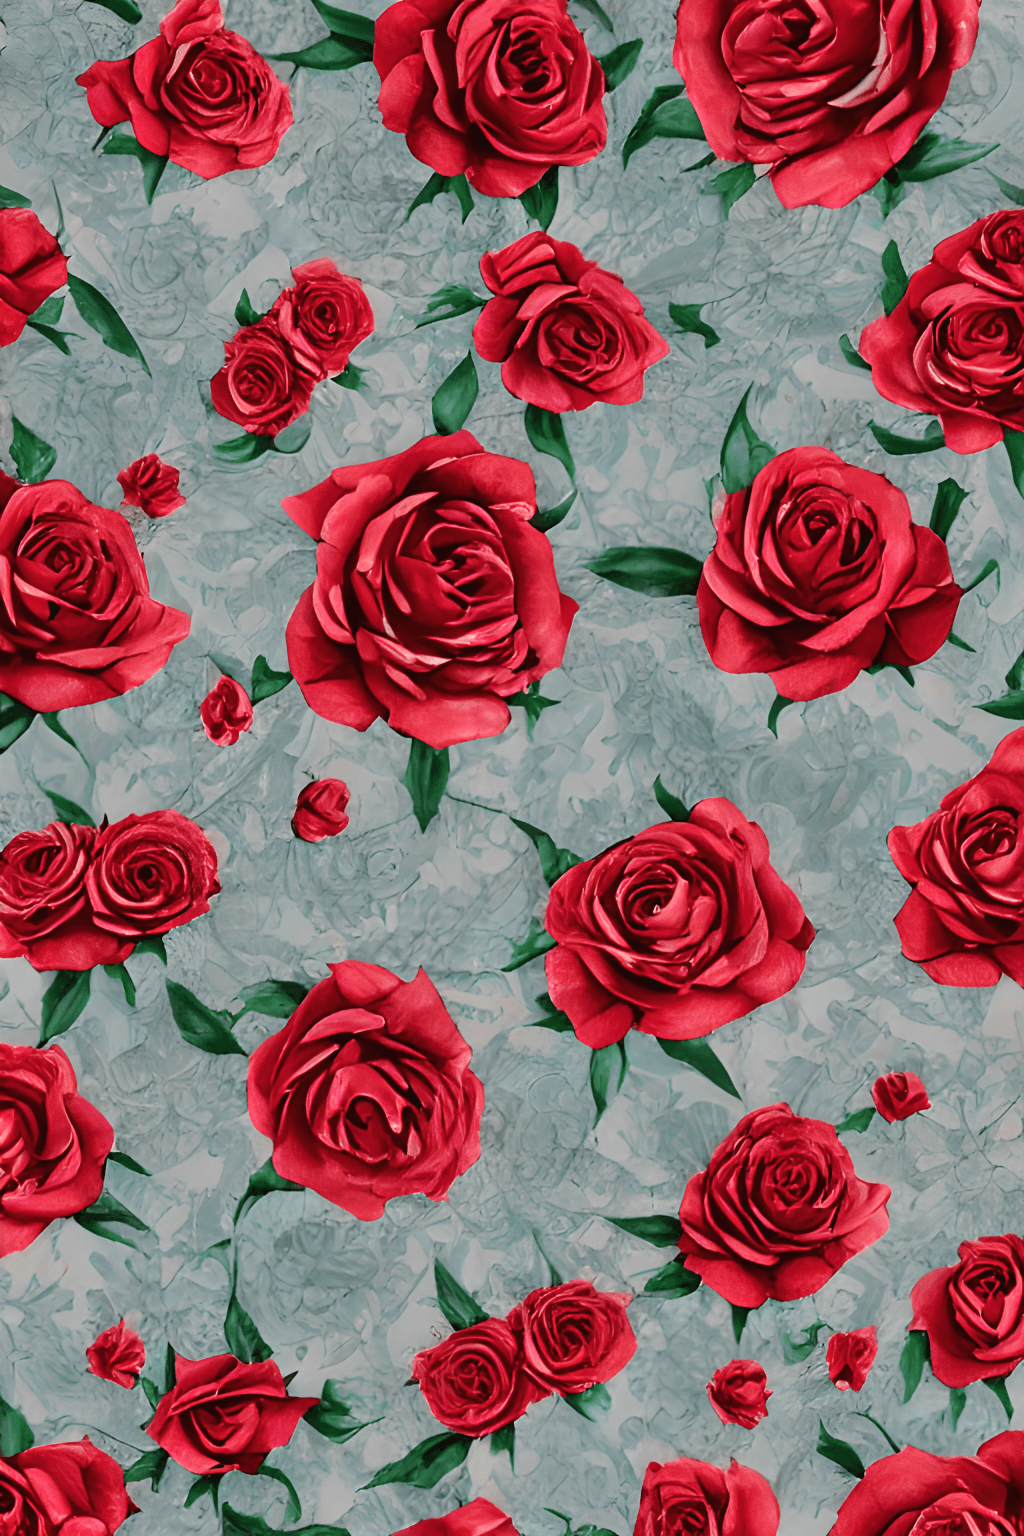  Rote Rosen Hintergrundbild 1024x1536. Blumenstrauß Mit Roten Rosen Im Vintage Stil, Gotische Ephemera · Creative Fabrica